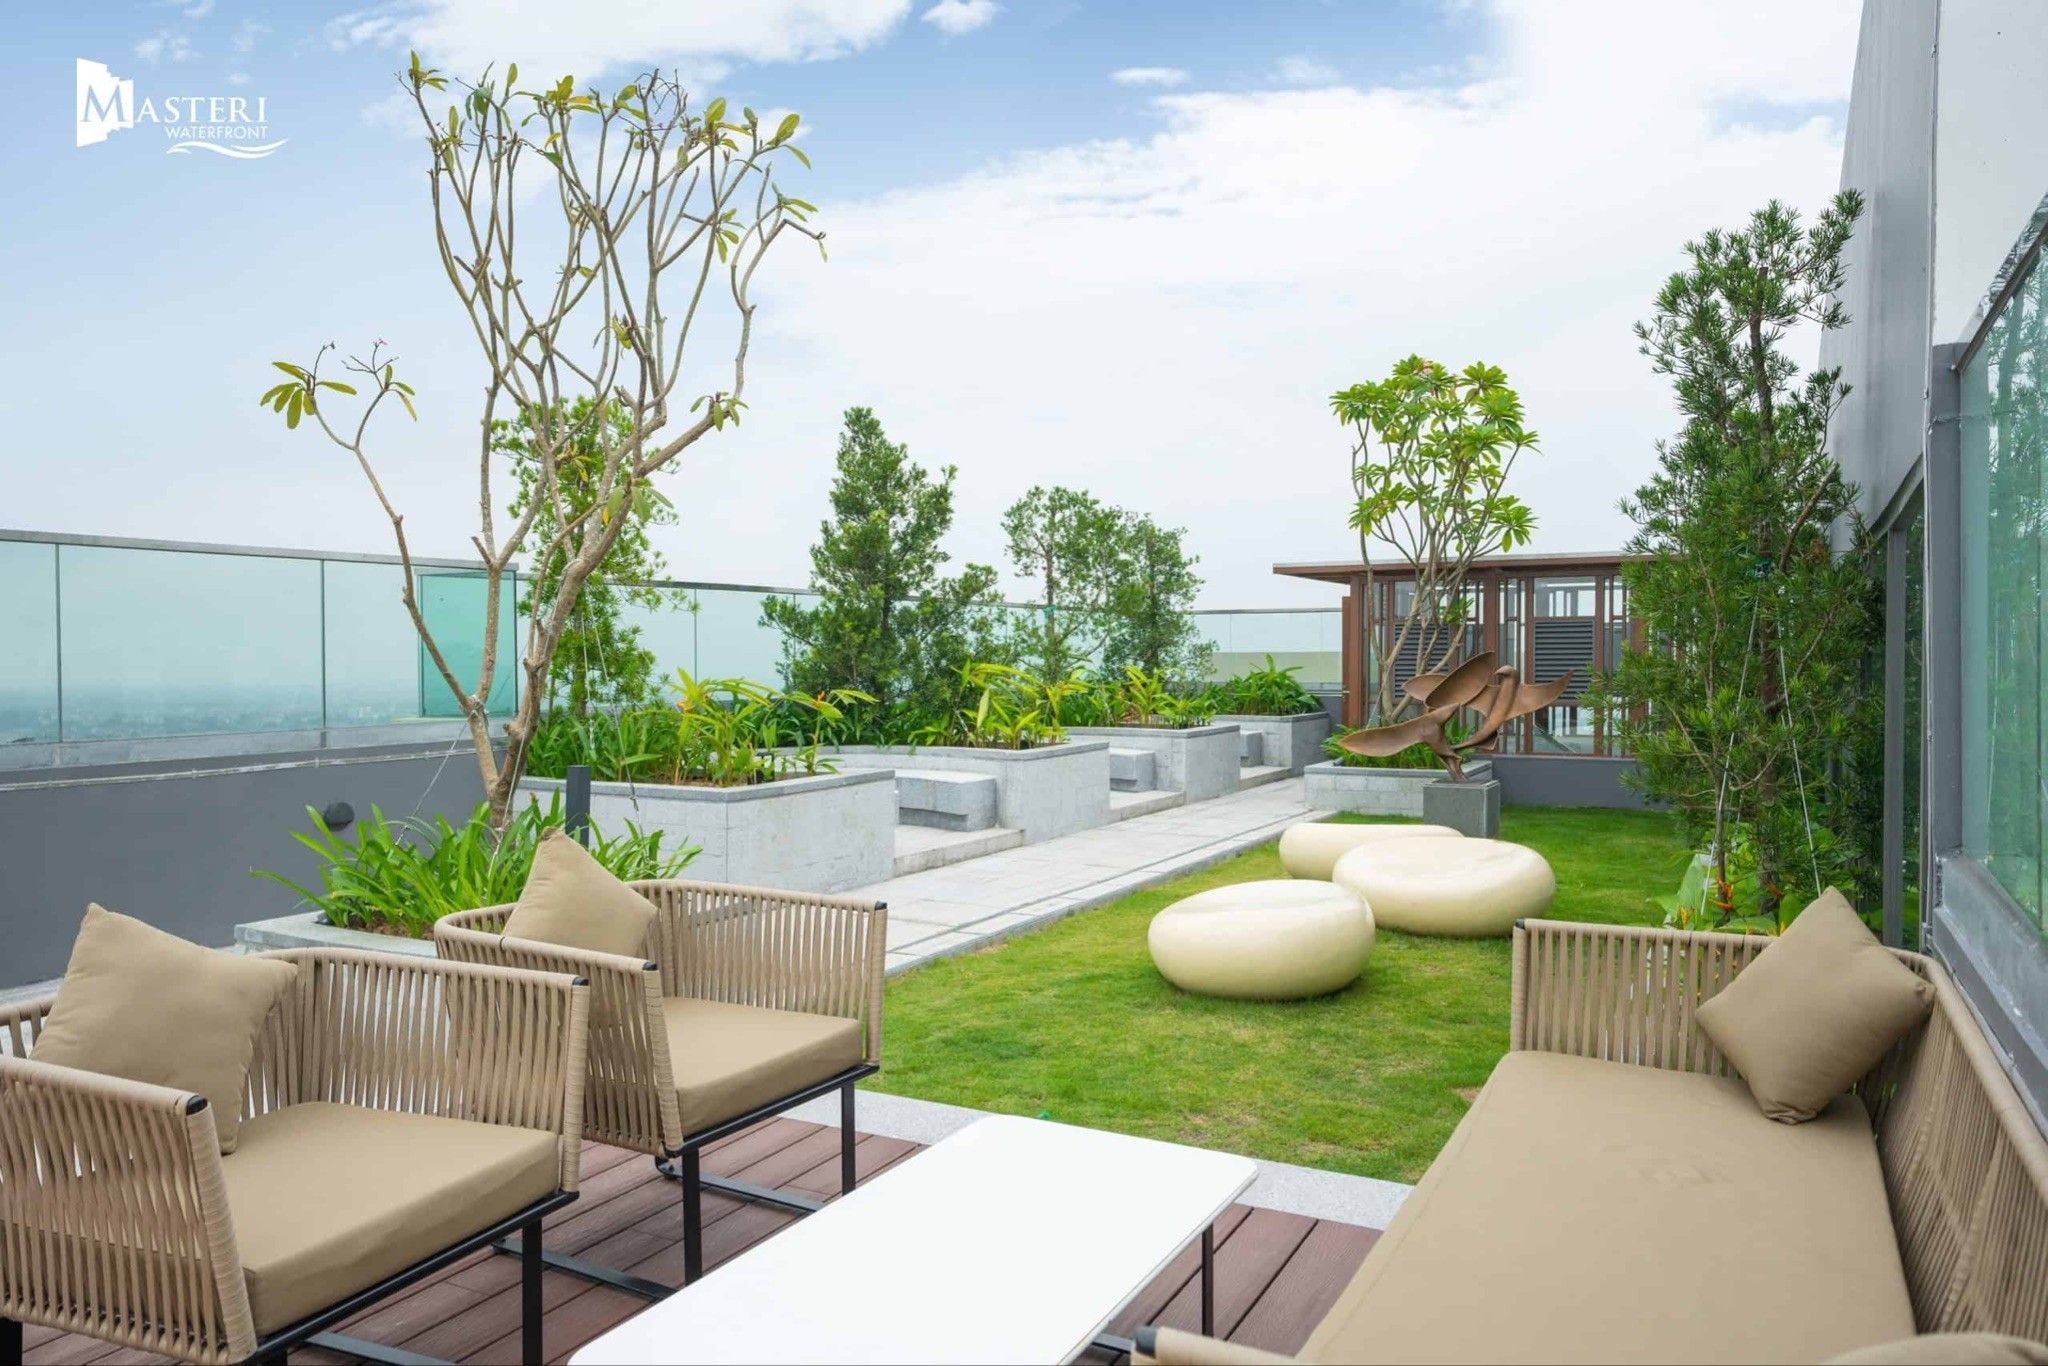 Thử nâng cấp chất lượng sống và tận hưởng giá trị thượng lưu khi thuê nhà tại Masteri Waterfront